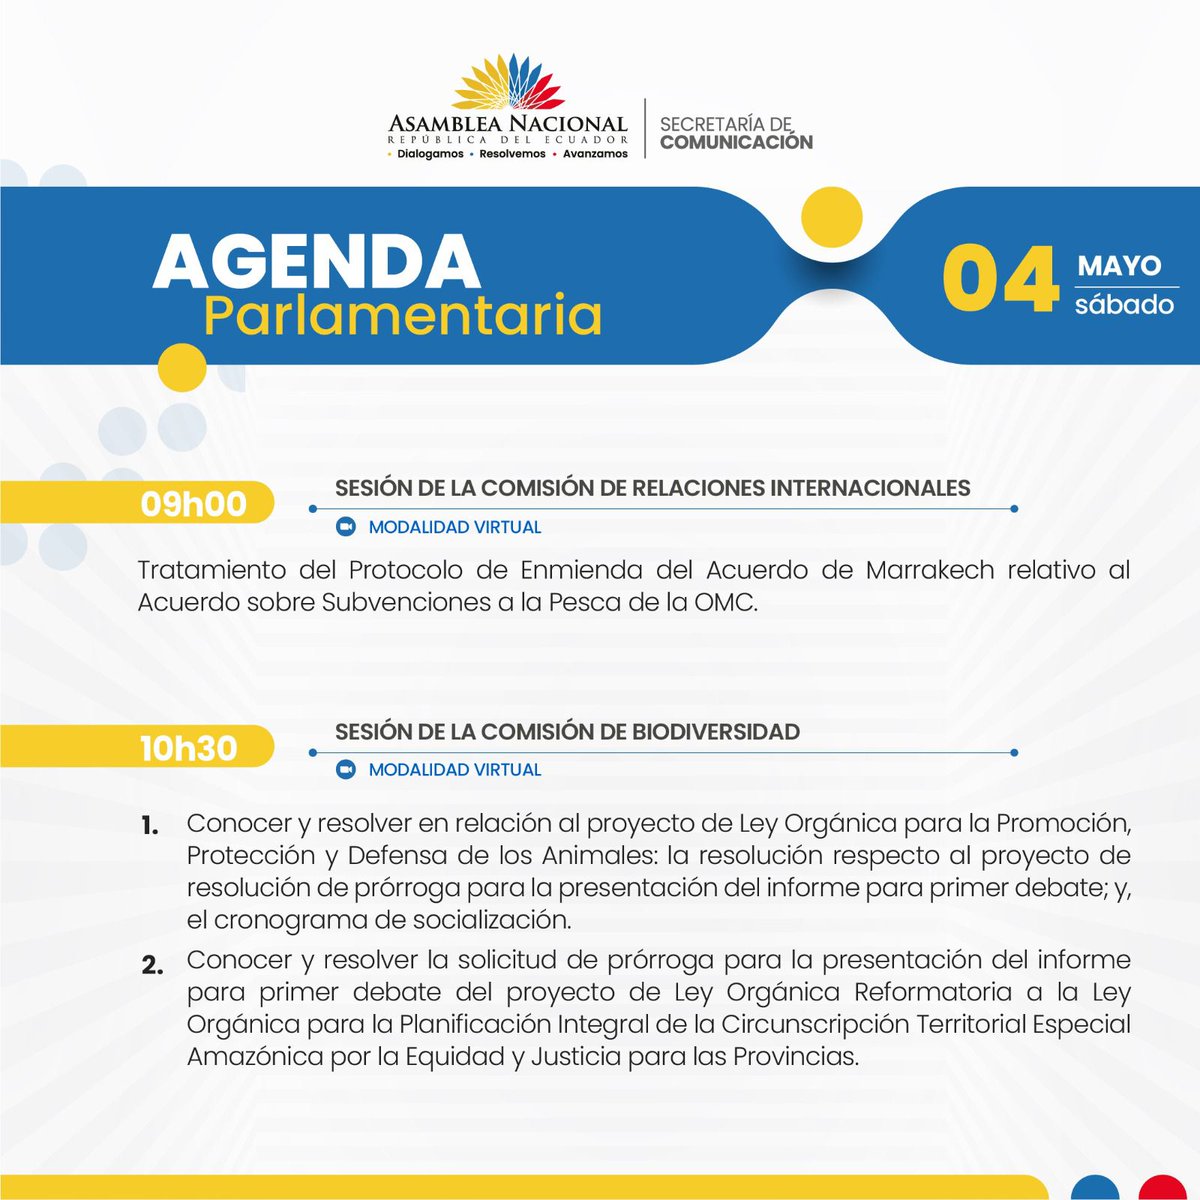 #LaNuevaAsamblea Compartimos la Agenda Parlamentaria programada para mañana, sábado 04 de mayo. Sigue su desarrollo por las cuentas oficiales: @AsambleaEcuador @RRIIMovilidadAN @BiodiversidadAN